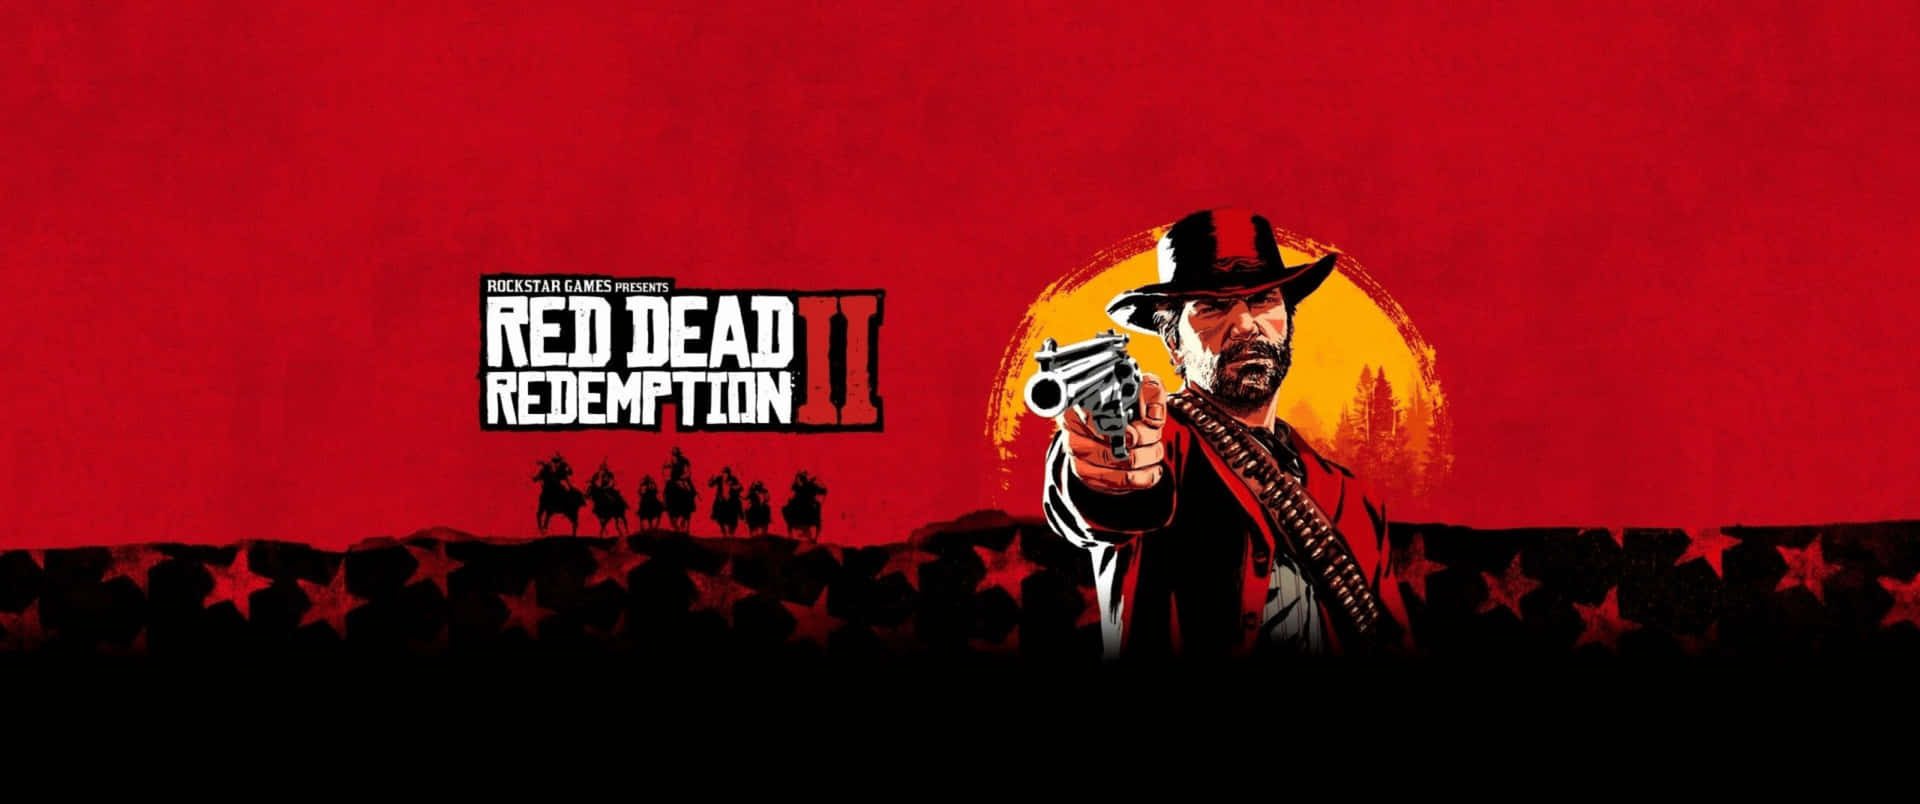 3440x1440p Red Dead Redemption 2 Sfondo